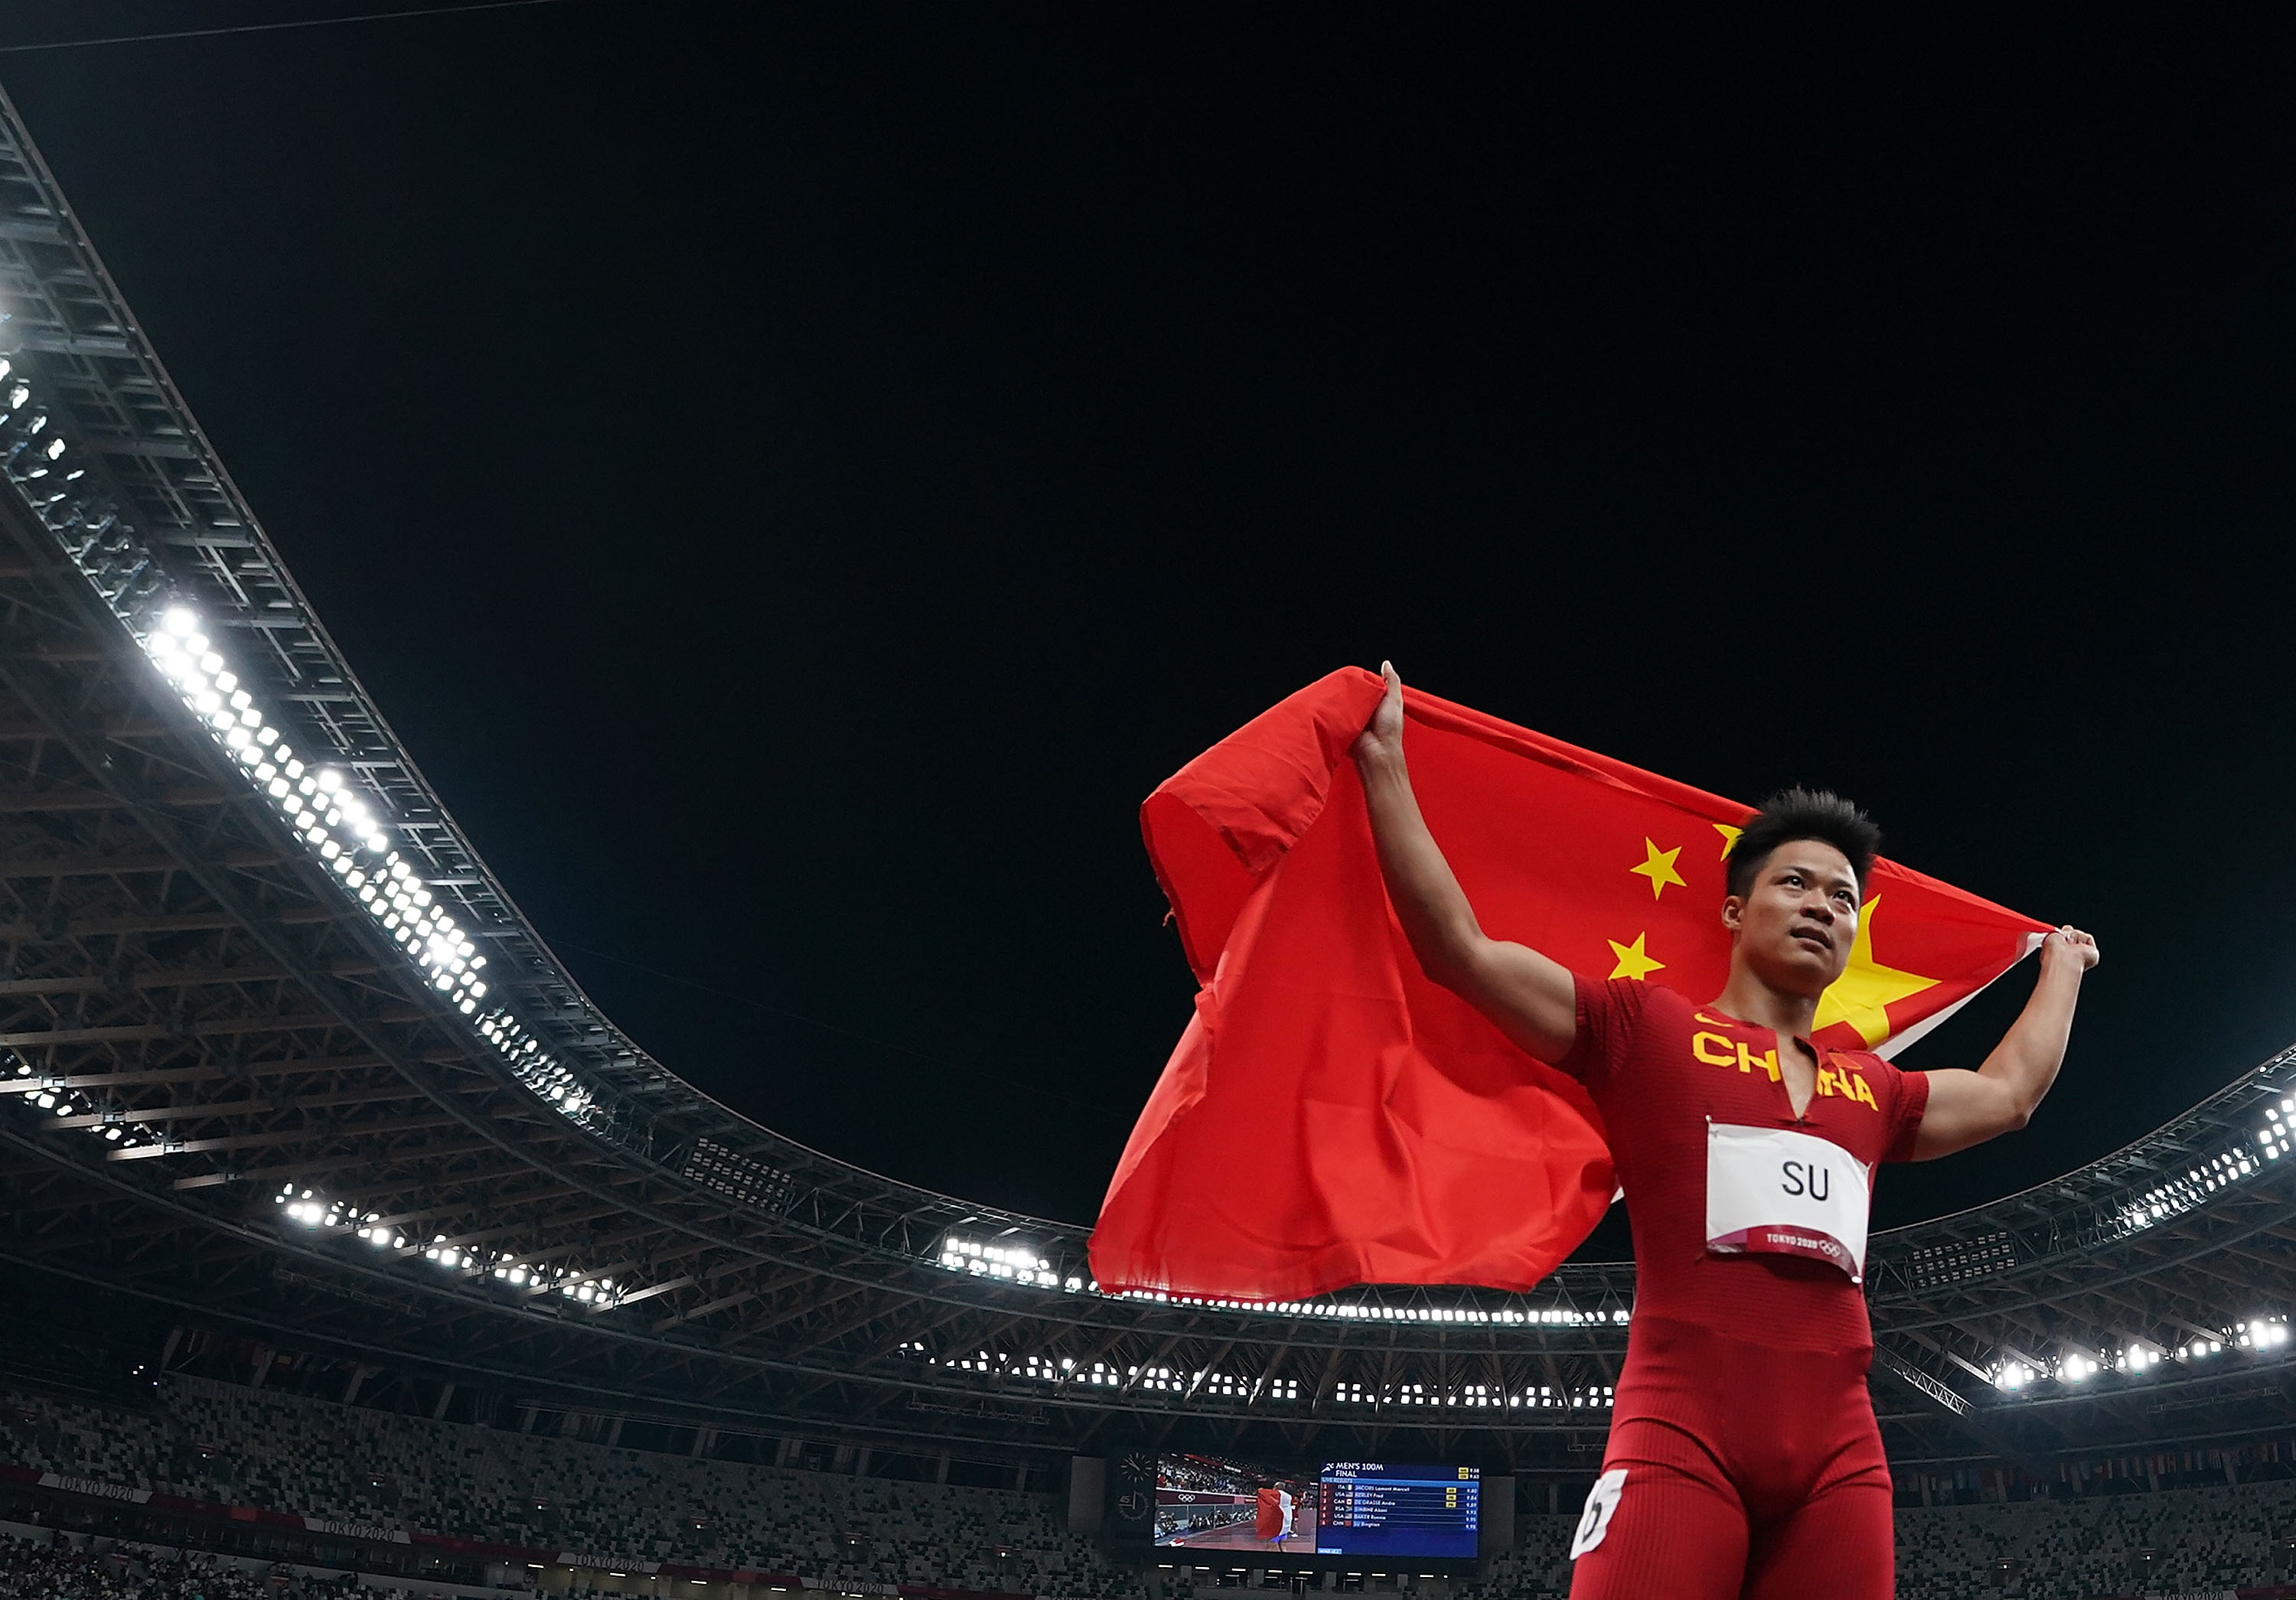 当日,中国选手苏炳添出战东京奥运会田径男子100米决赛